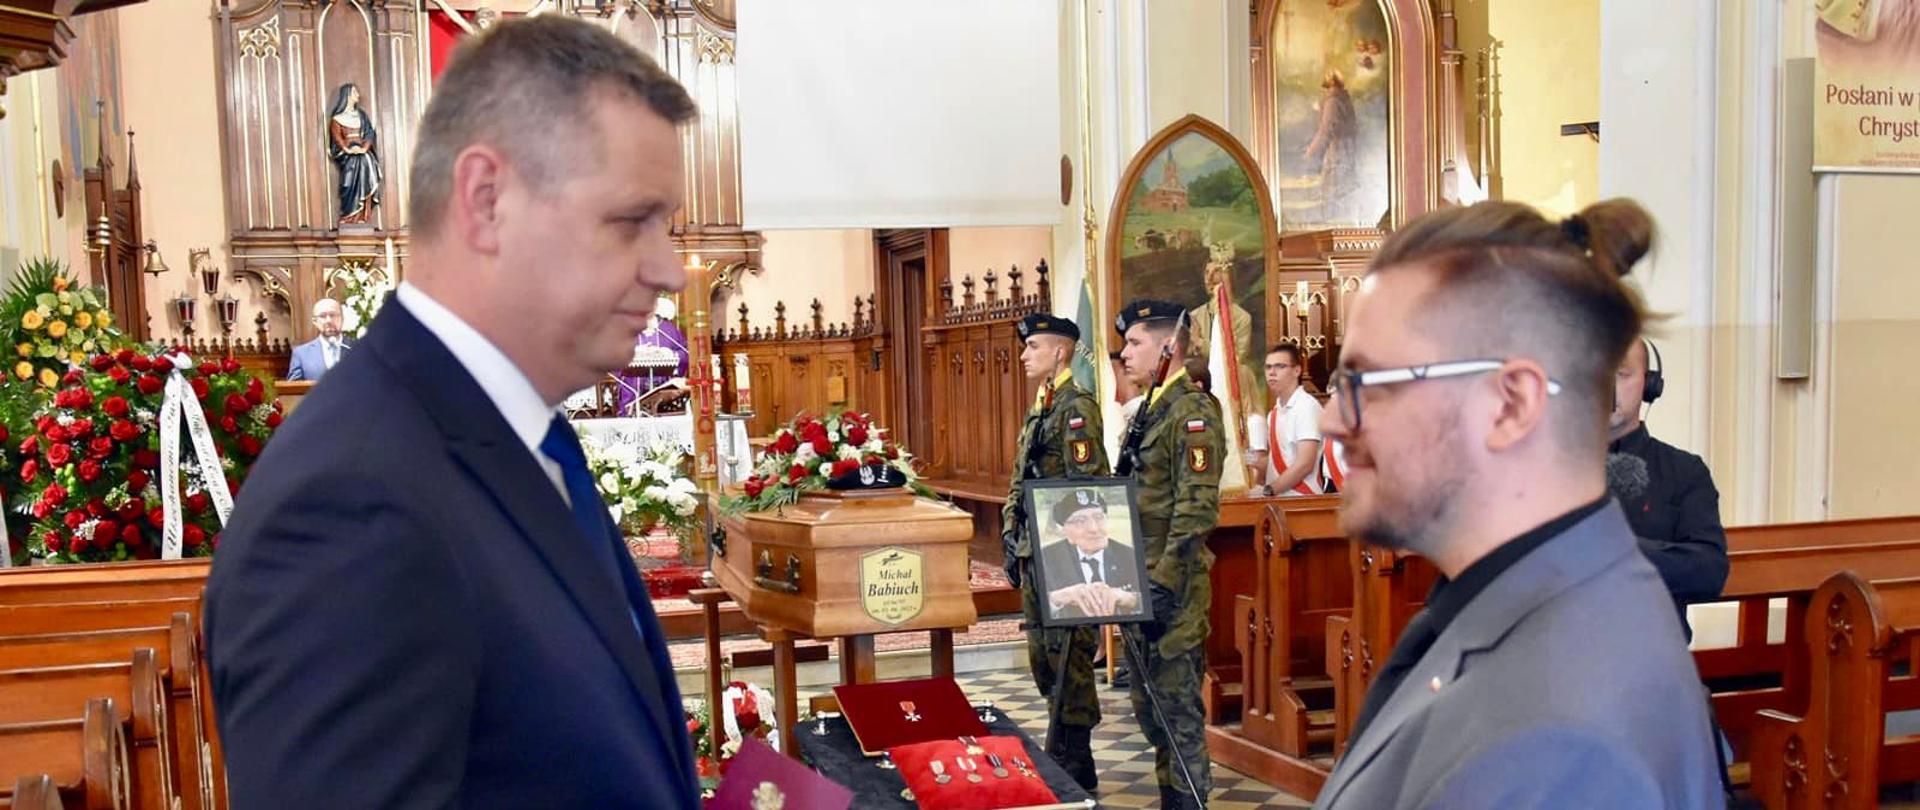 Uroczystość pogrzebowa kpt. Michała Babiucha